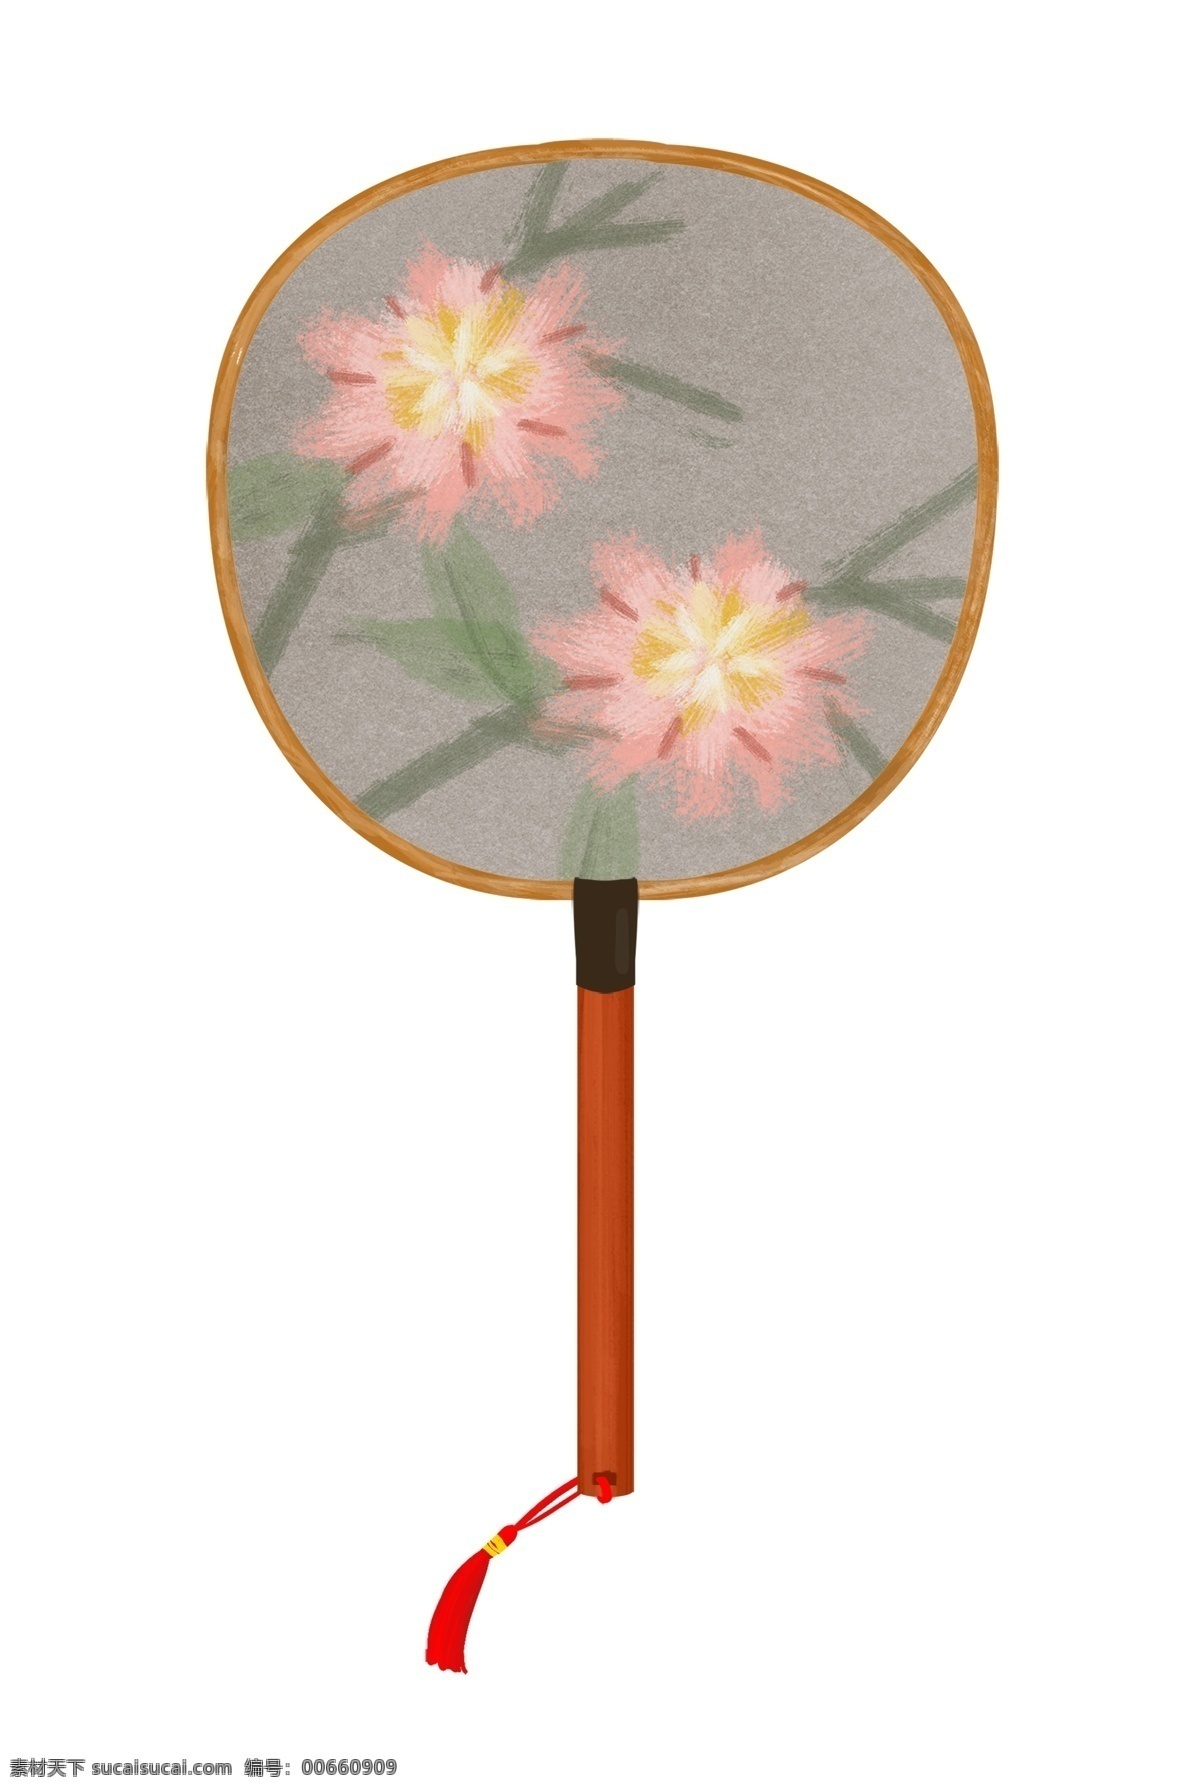 中国 古典 印花 扇子 水墨风 中国风扇子 花朵扇子 浅色扇子 卡通扇子 红粉色鲜花 鲜花扇子